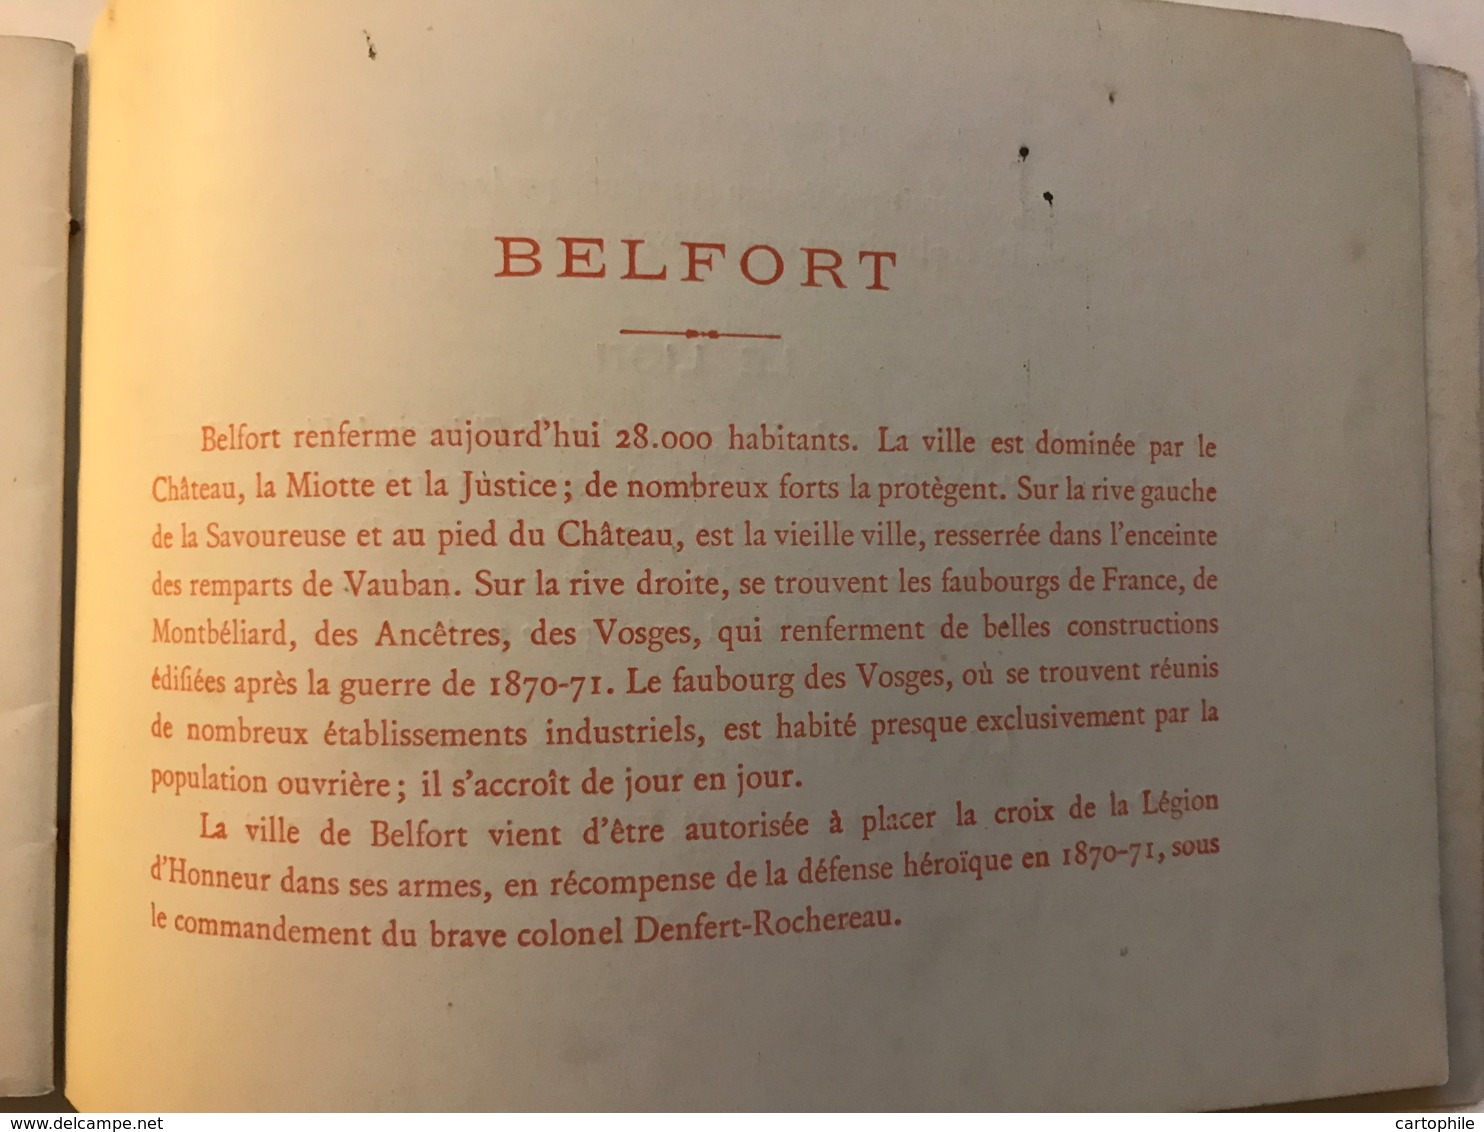 Dépliant Touristique Contenant 10 Photos De BELFORT Vers 1900 Avec Un Explicatif Historique à La Fin Du Fascicule - Rare - Tourism Brochures